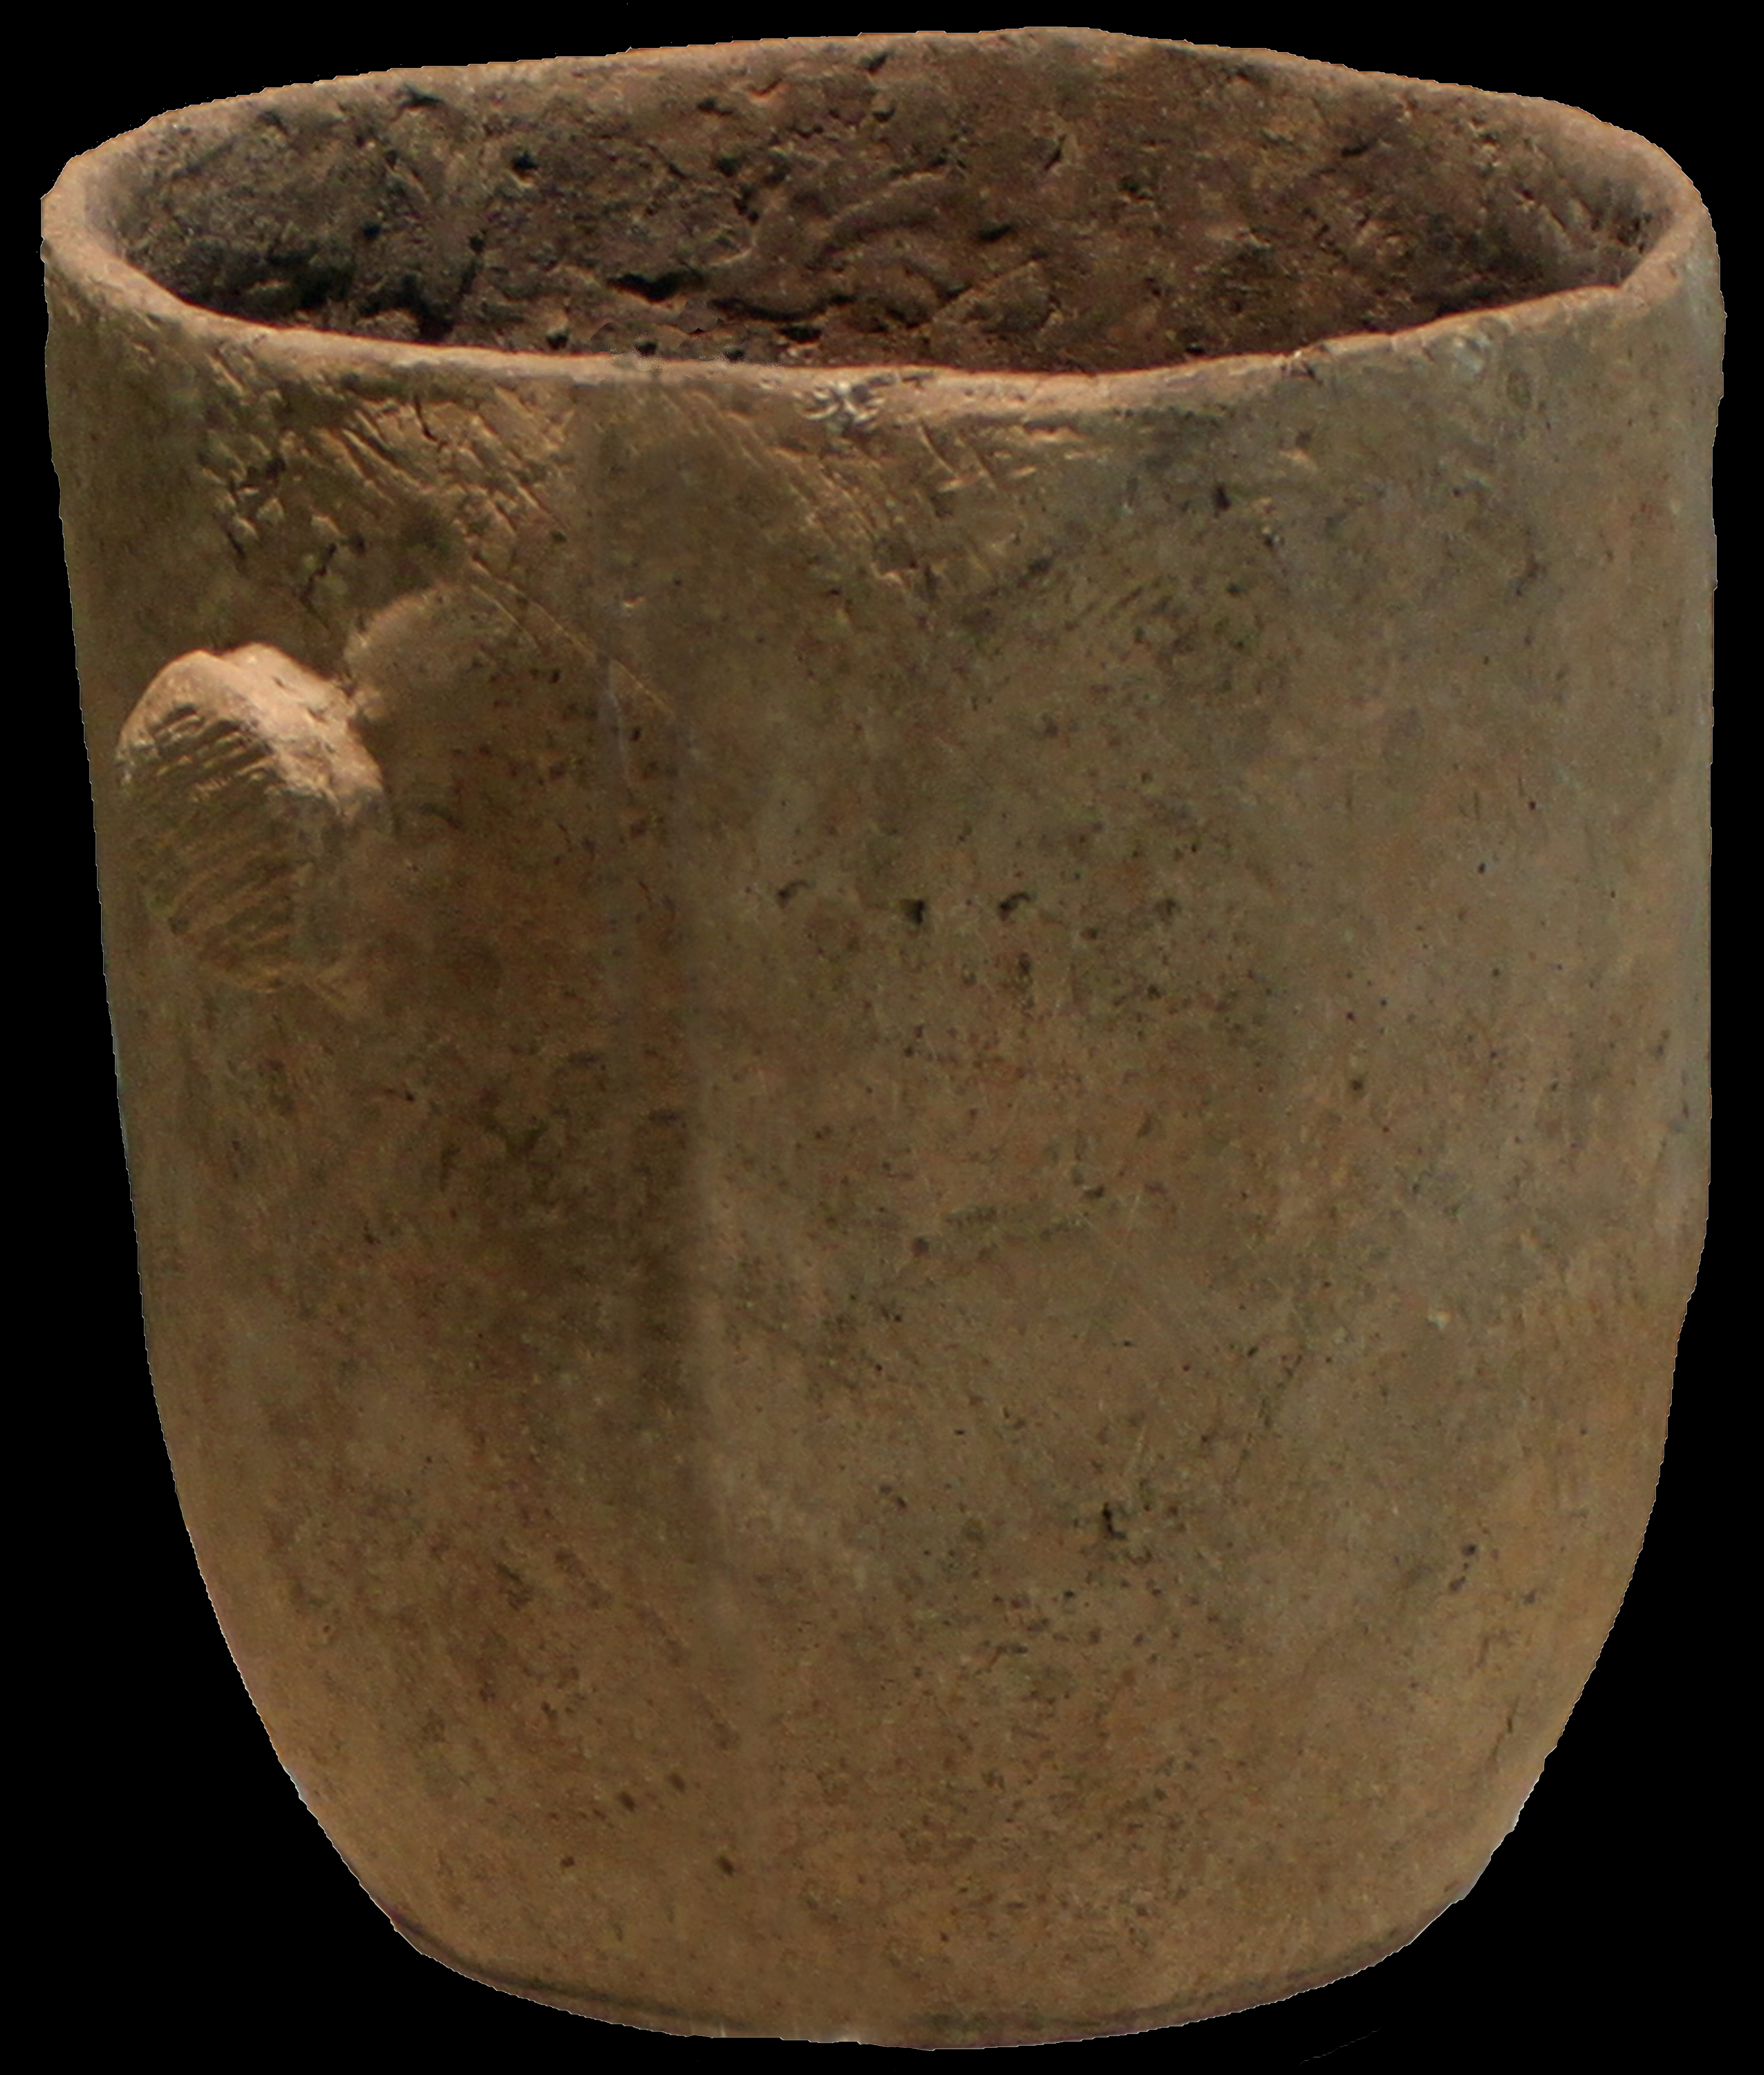 1000 BC pottery vessel, Adena Period